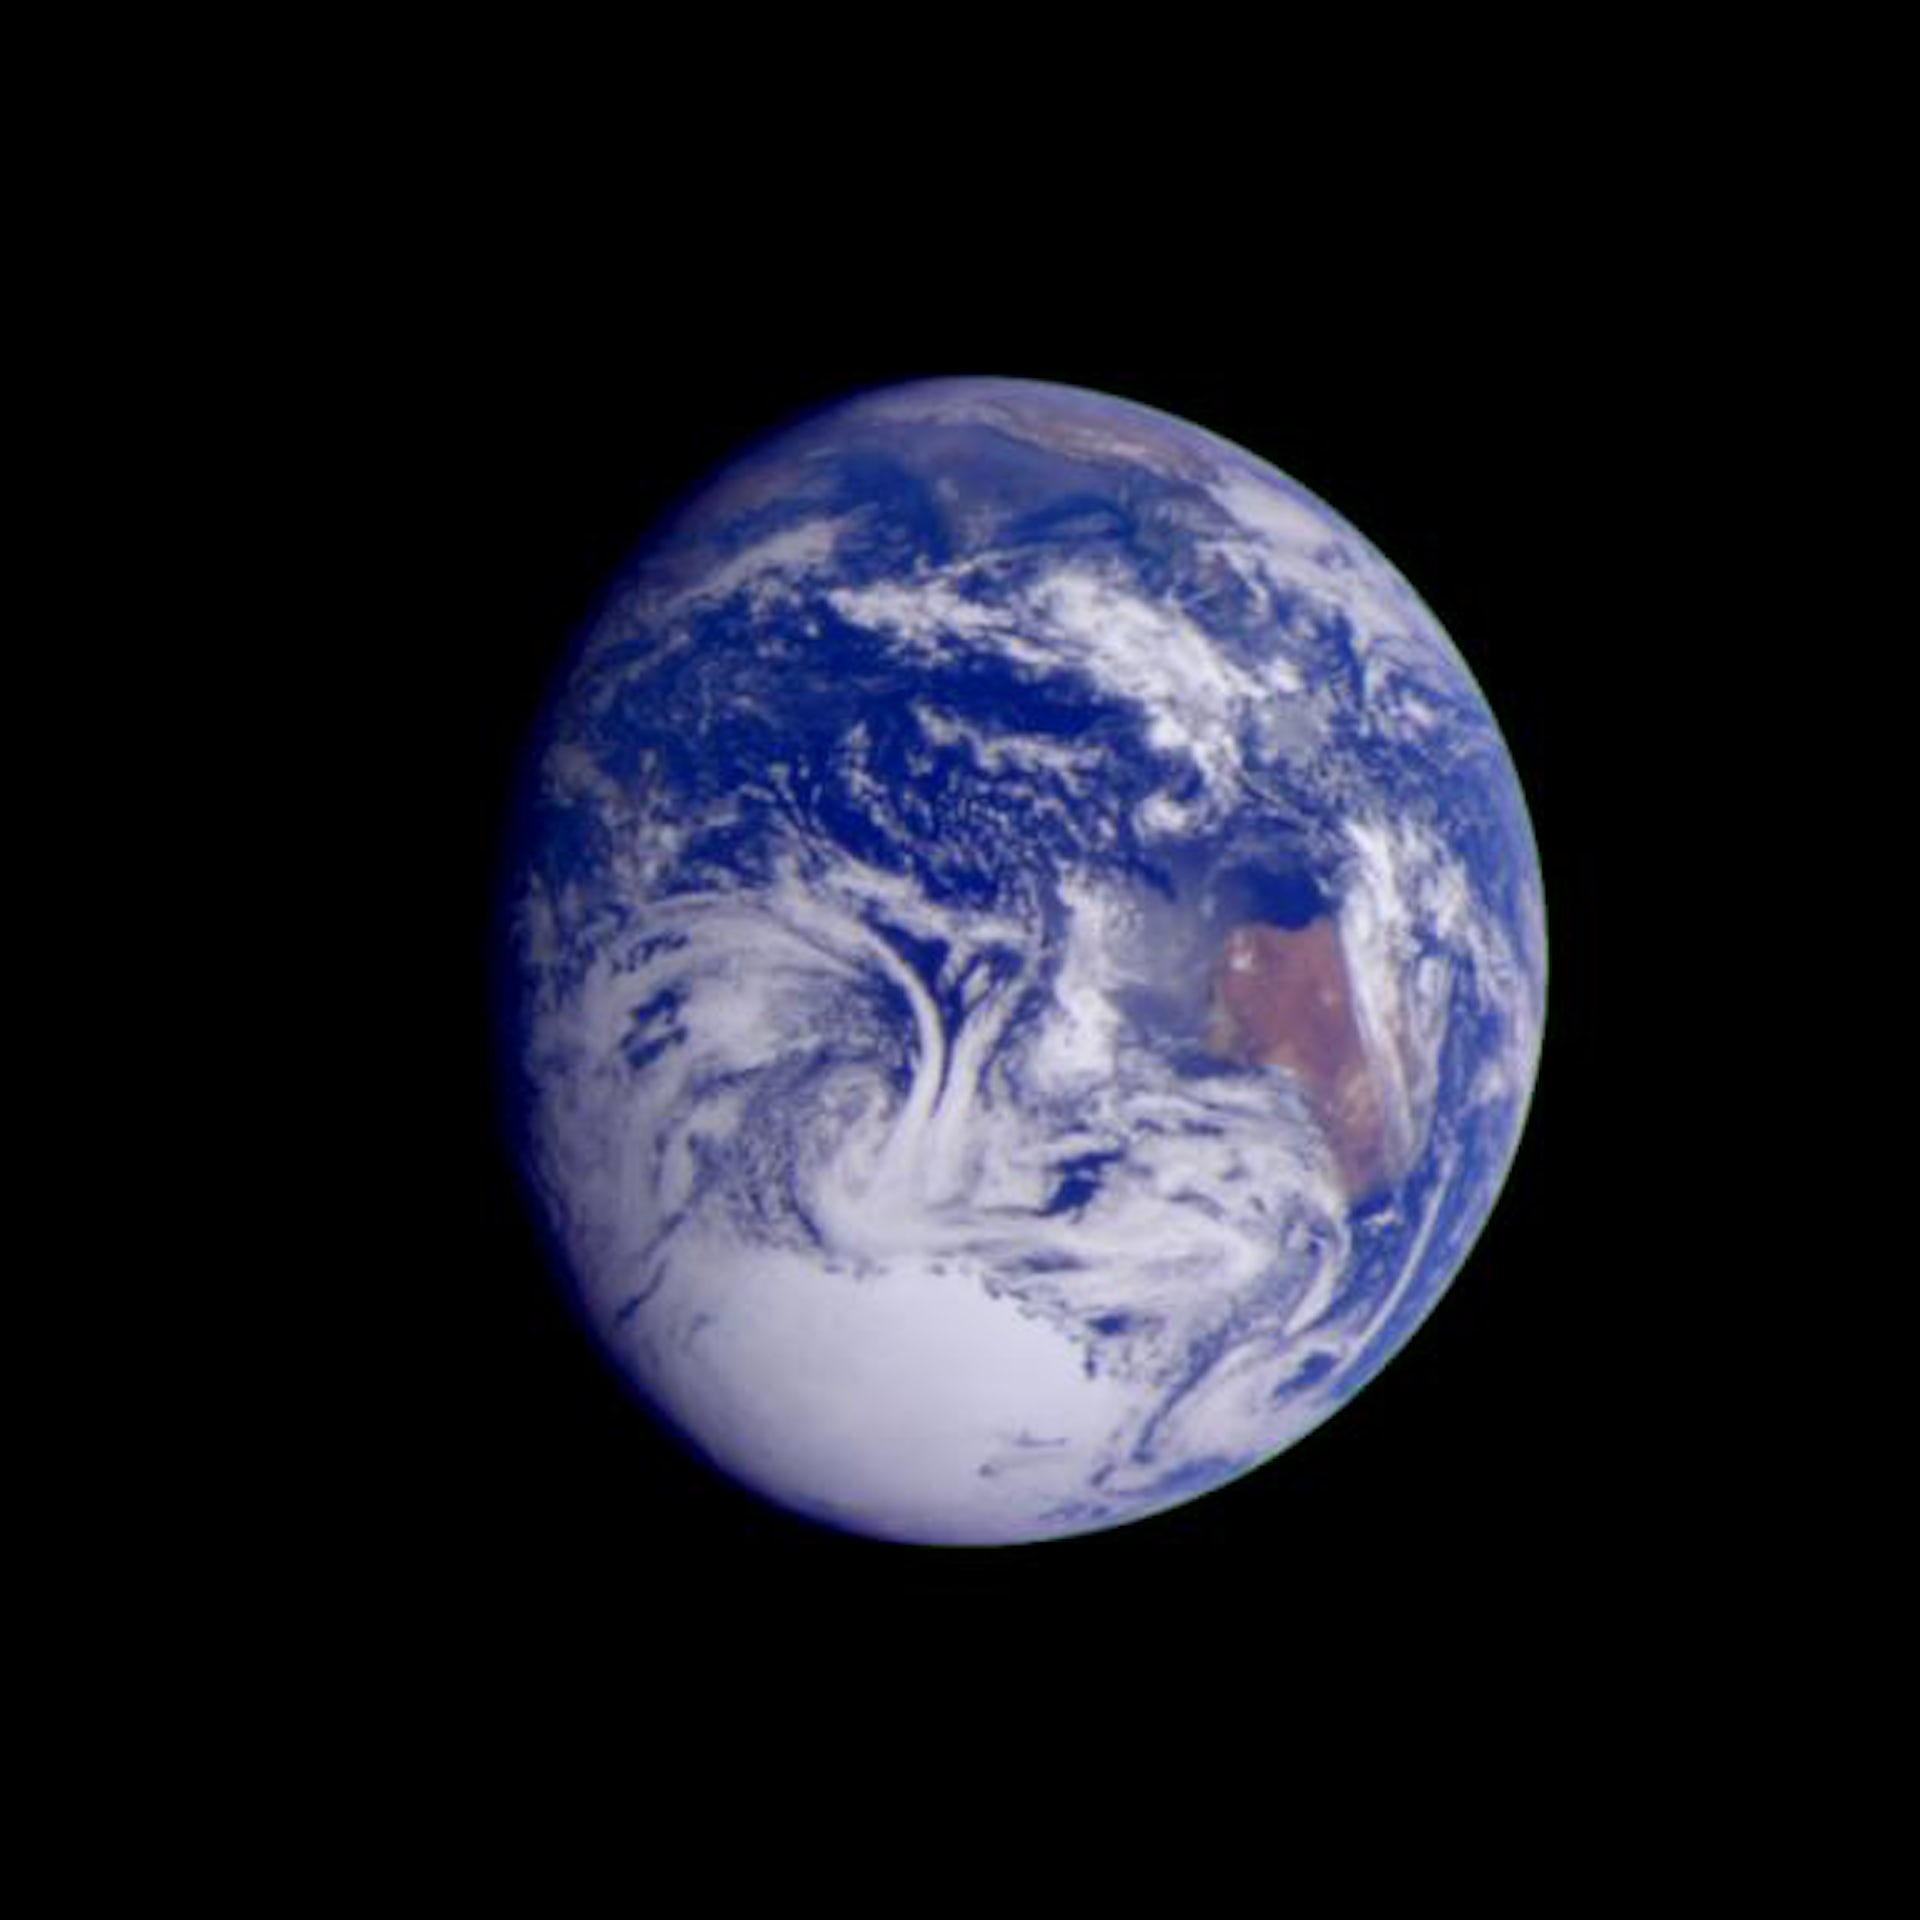 Gambar diambil oleh pesawat luar angkasa Galileo pada jarak 2.4 juta km.